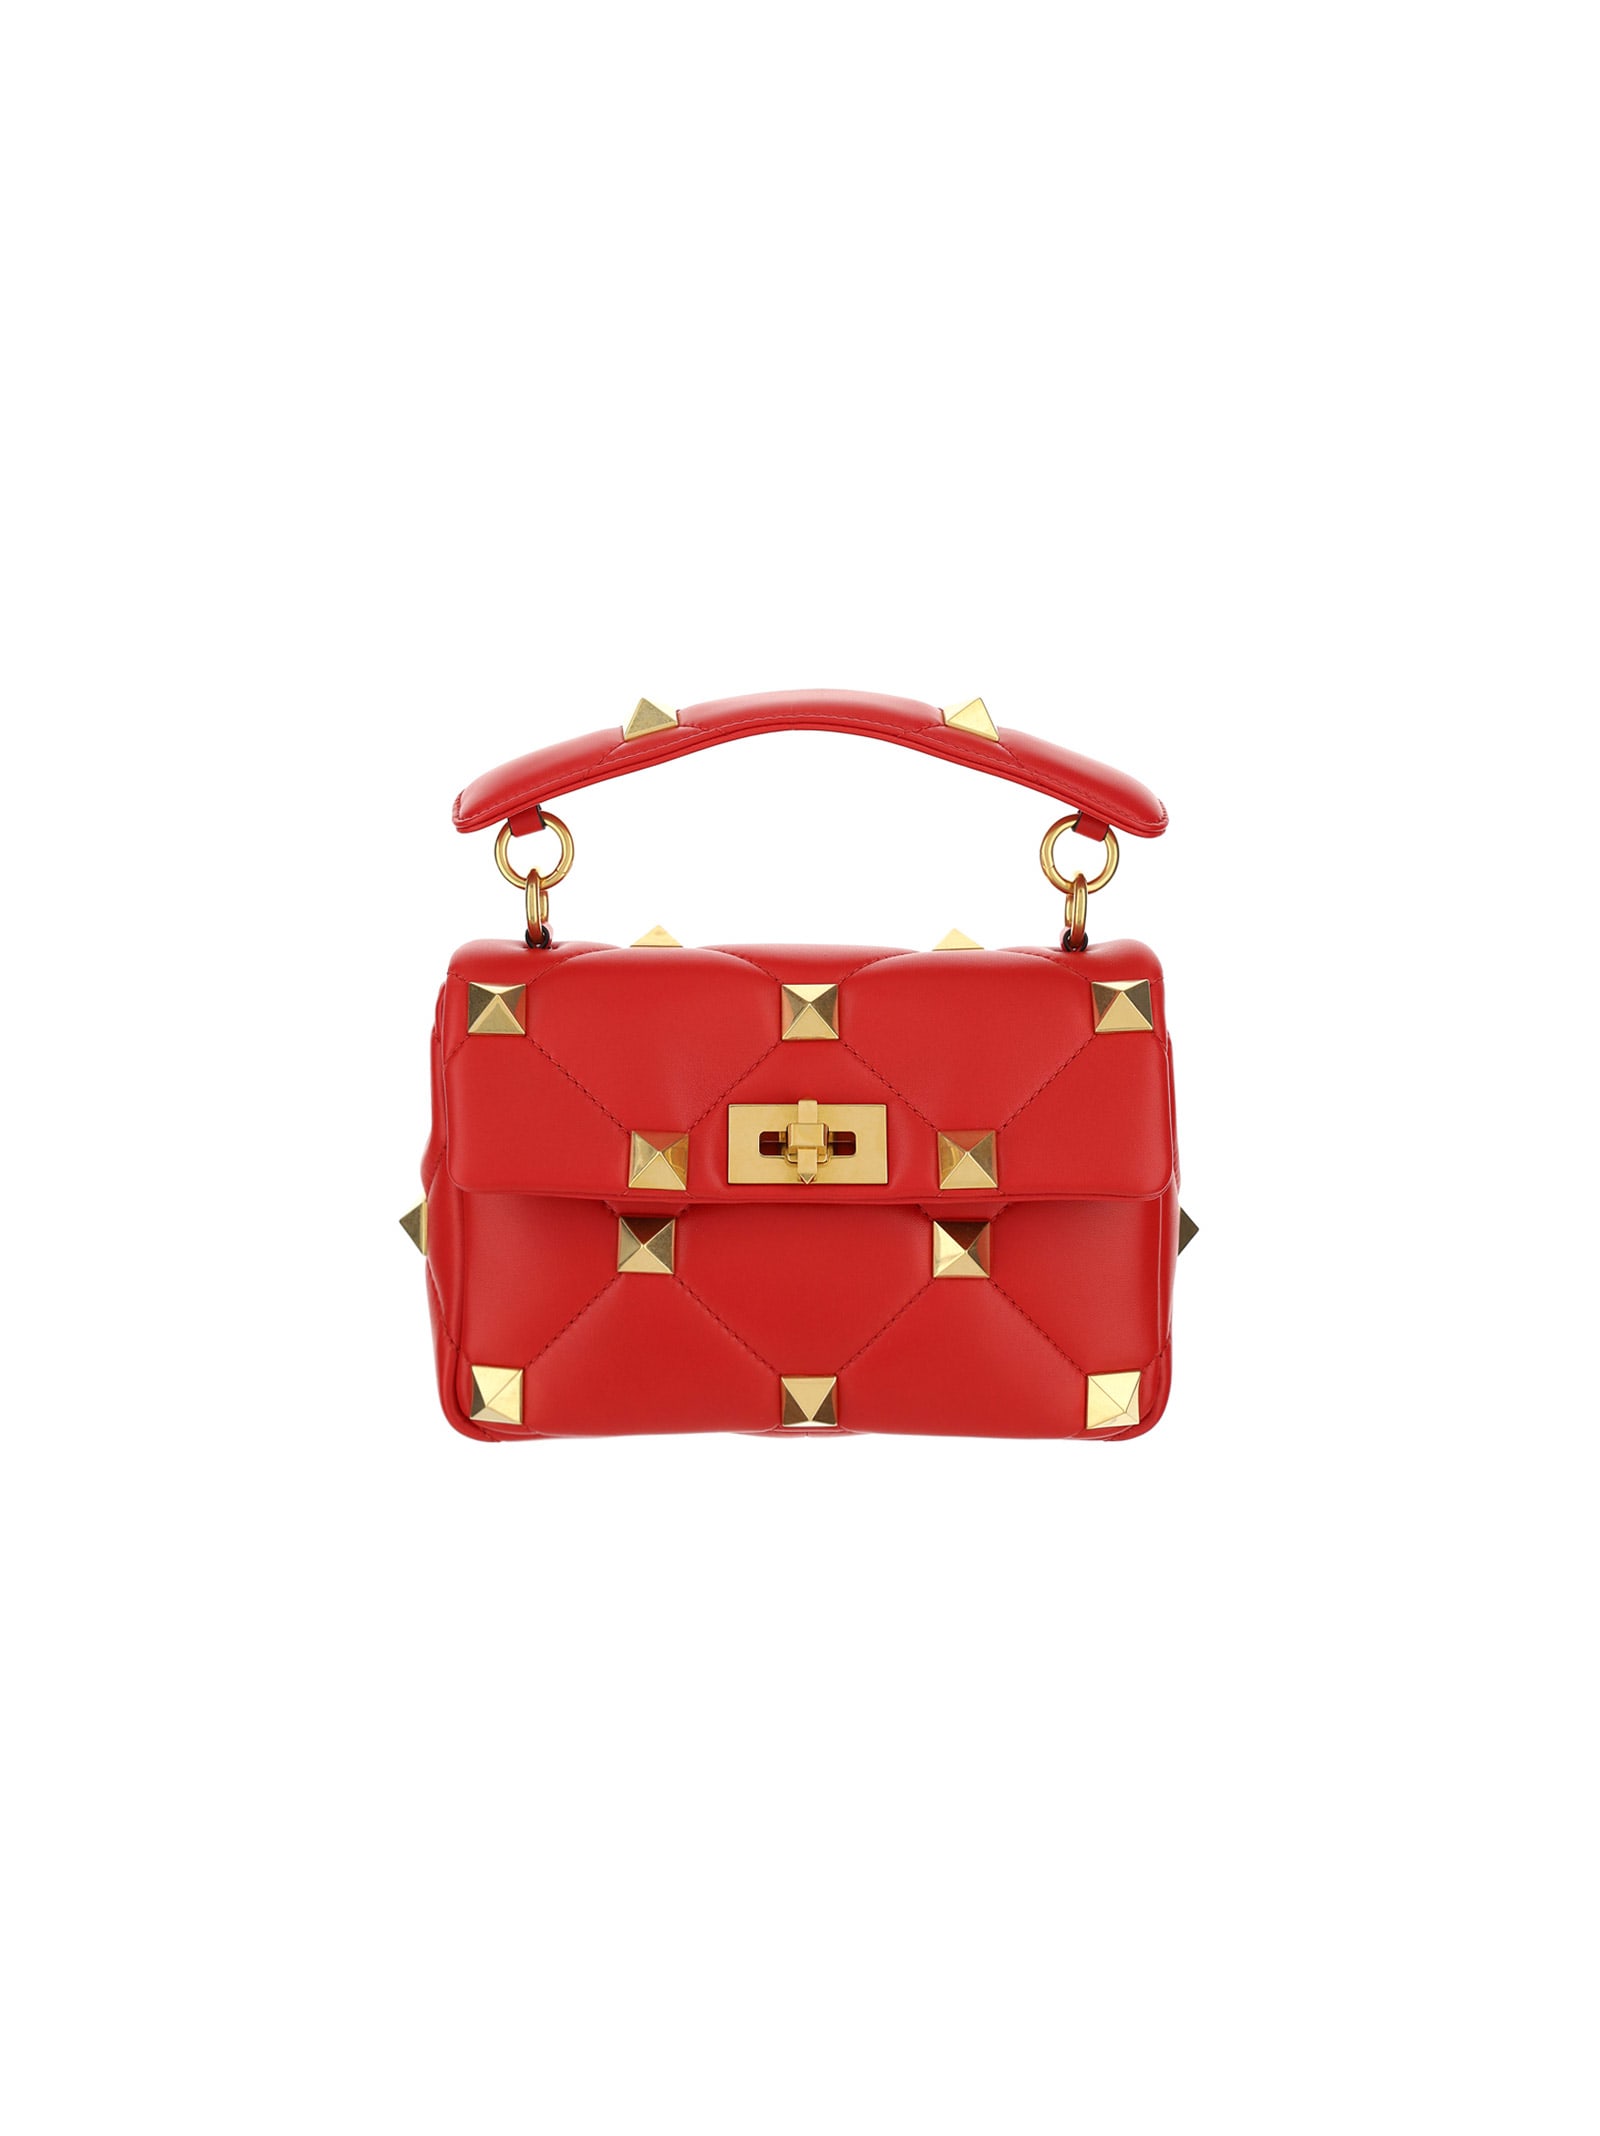 Valentino Garavani Small Roman Stud Handbag